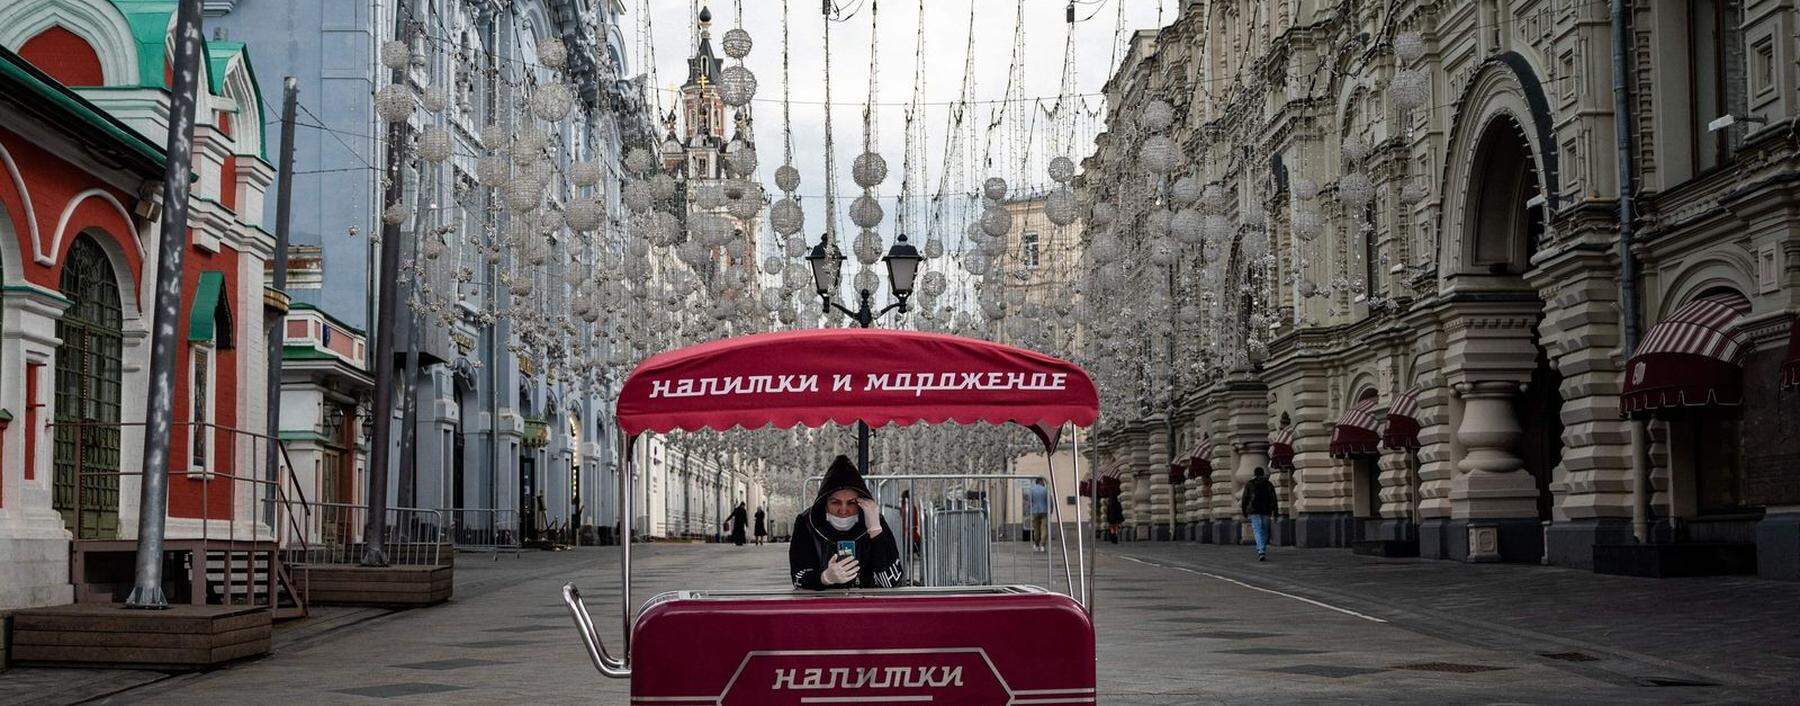 Eisverkäuferin mit Mundschutz in Moskau. Laut Regierung ist der Höhepunkt der Infektionswelle überschritten.